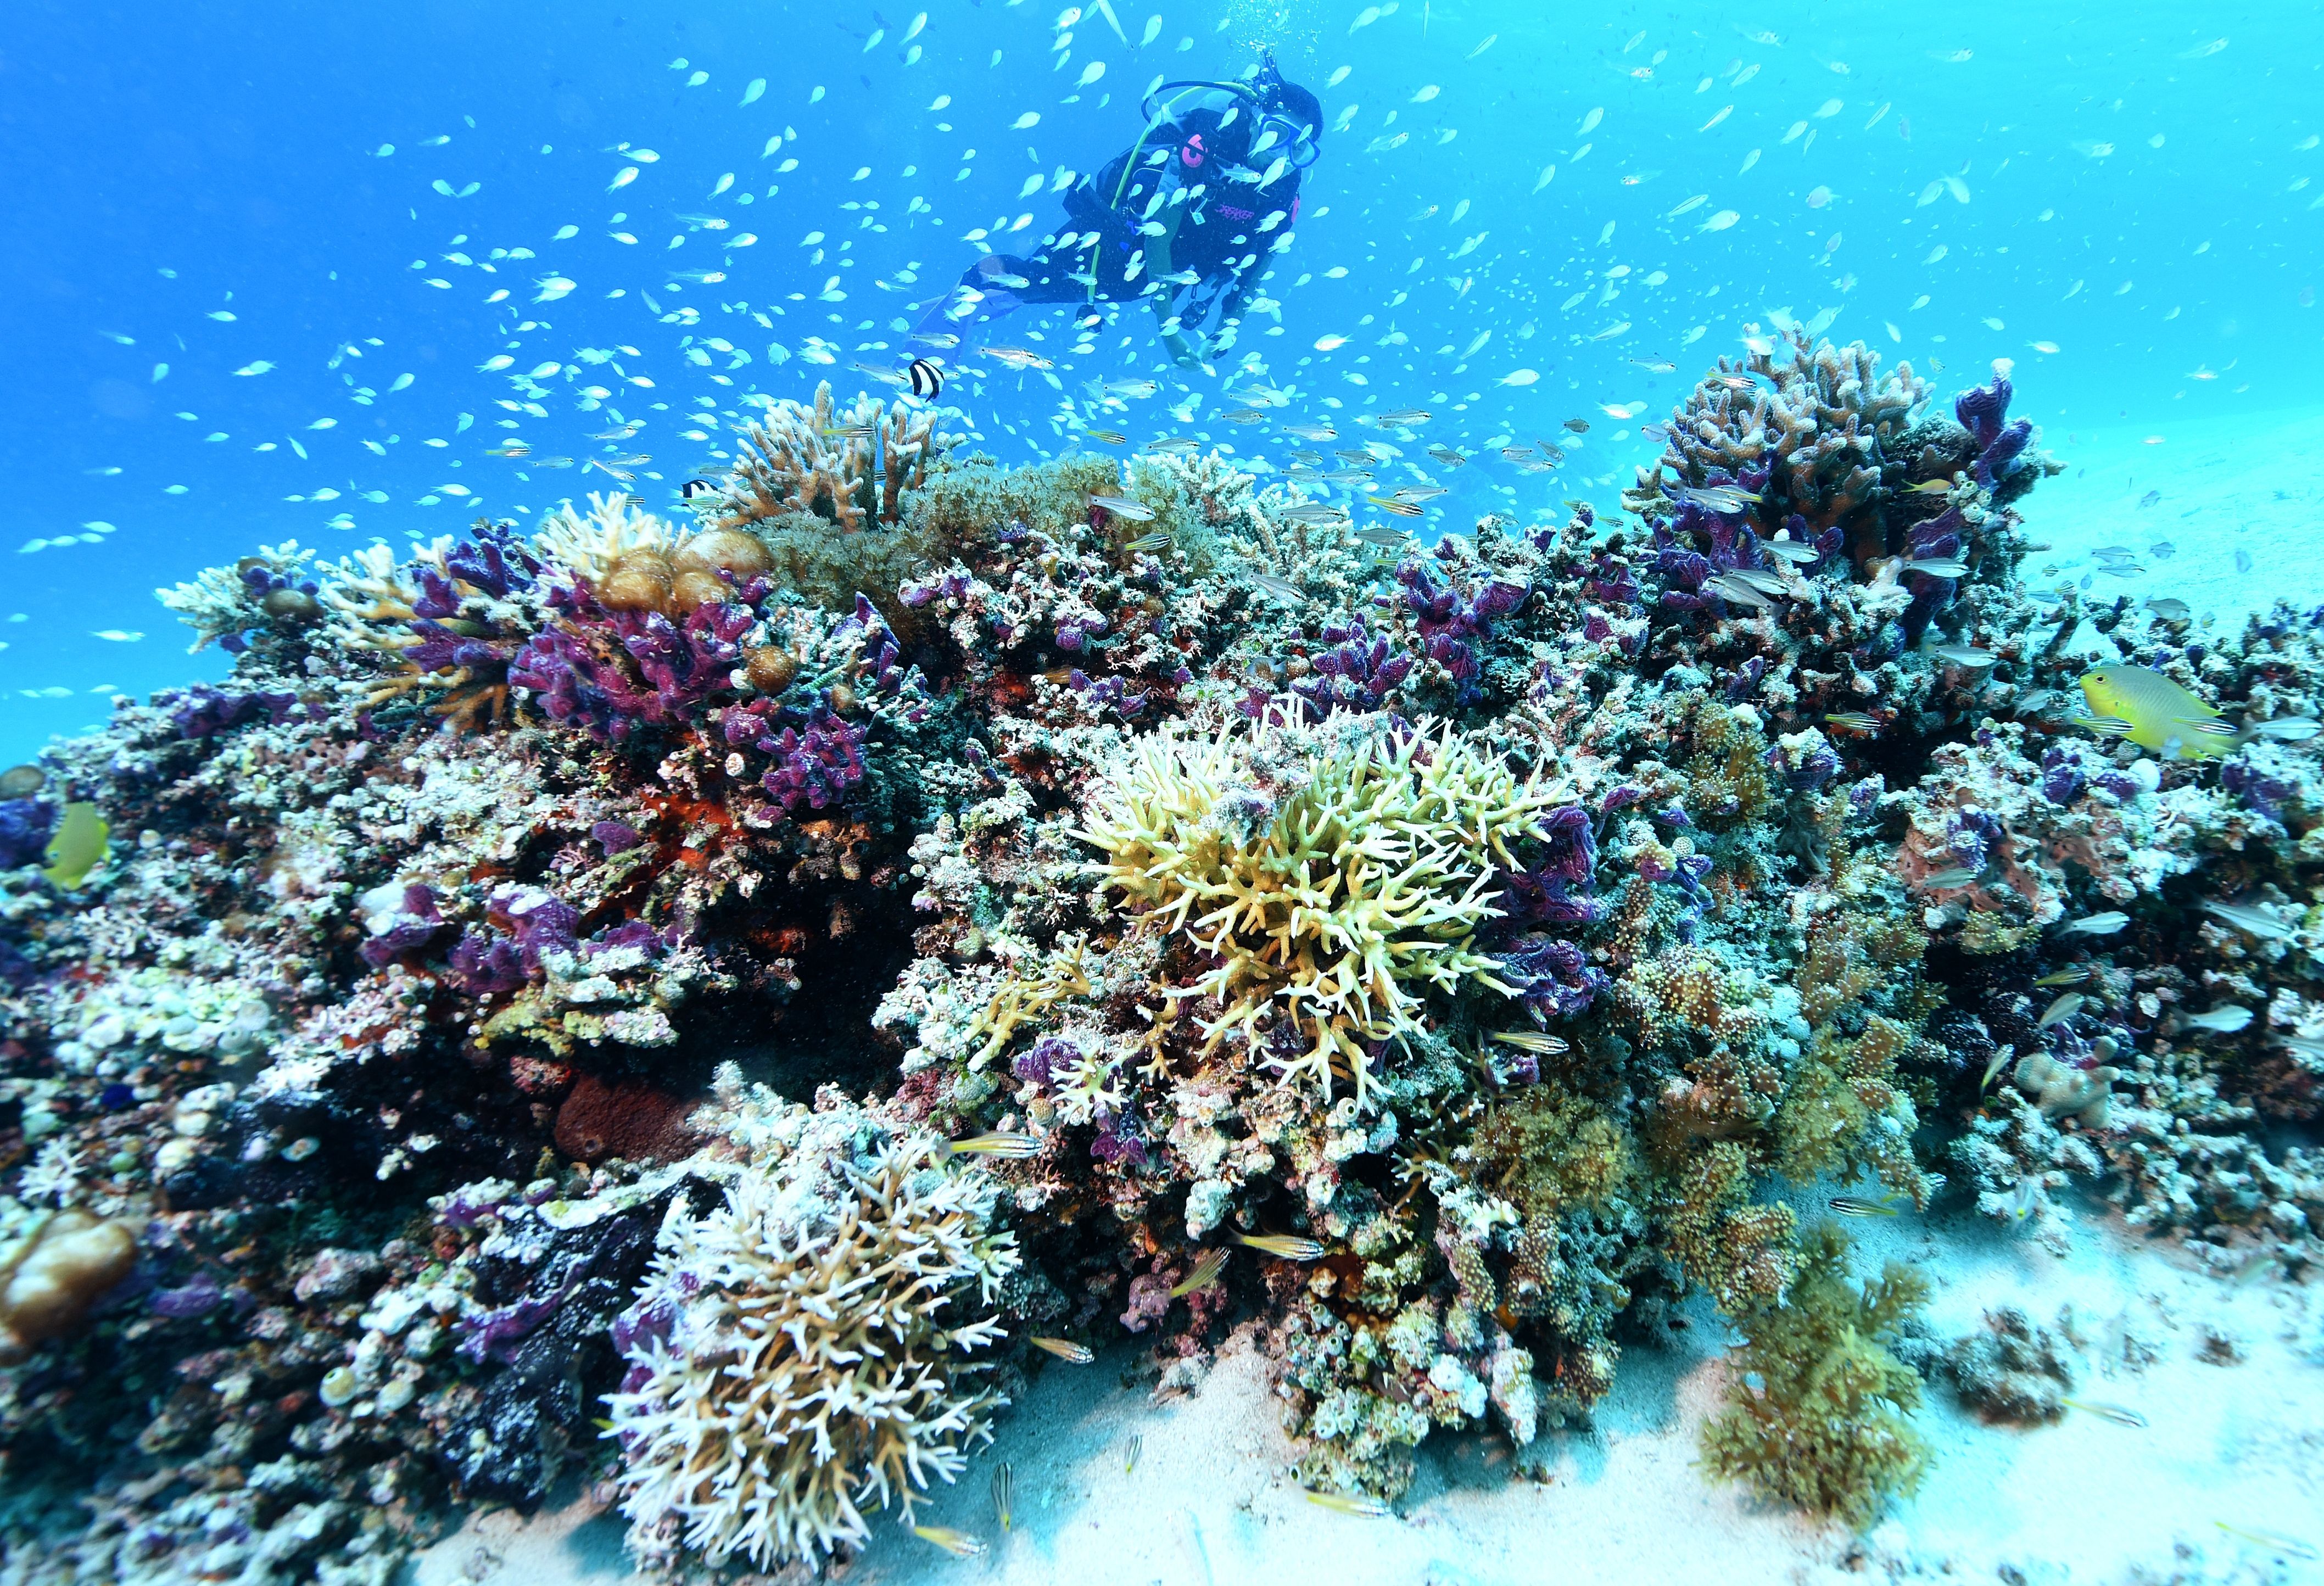 危機的な沖縄のサンゴ礁 保全と再生呼び掛けるイベント 県内各地で2月22日から3月8日まで 沖縄タイムス プラス ニュース 沖縄タイムス プラス